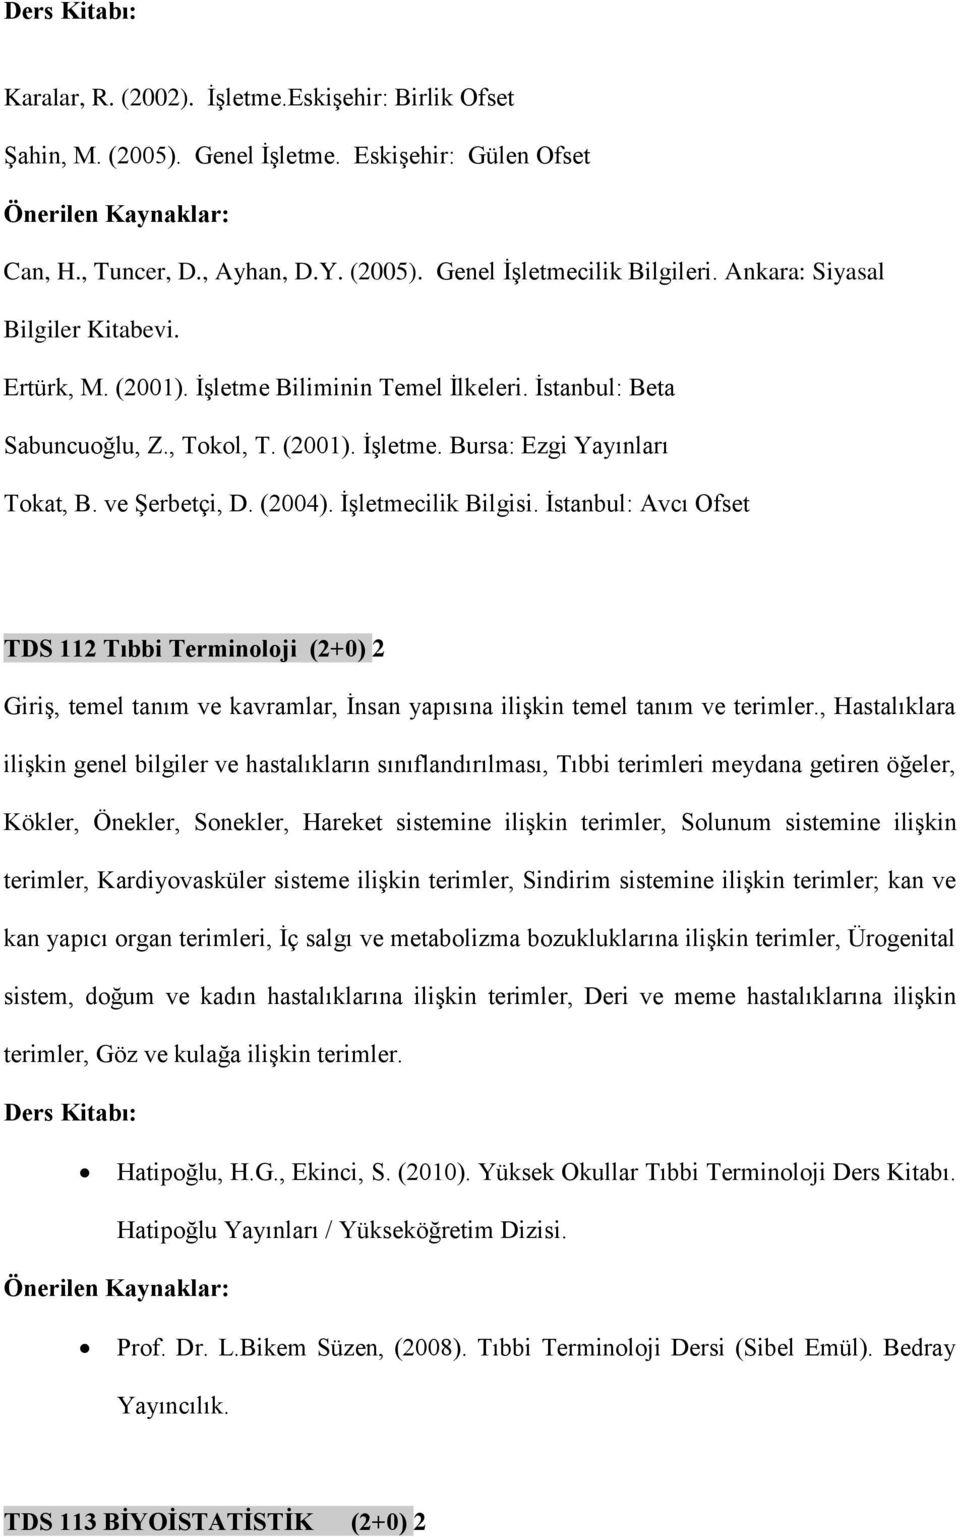 (2004). İşletmecilik Bilgisi. İstanbul: Avcı Ofset TDS 112 Tıbbi Terminoloji (2+0) 2 Giriş, temel tanım ve kavramlar, İnsan yapısına ilişkin temel tanım ve terimler.